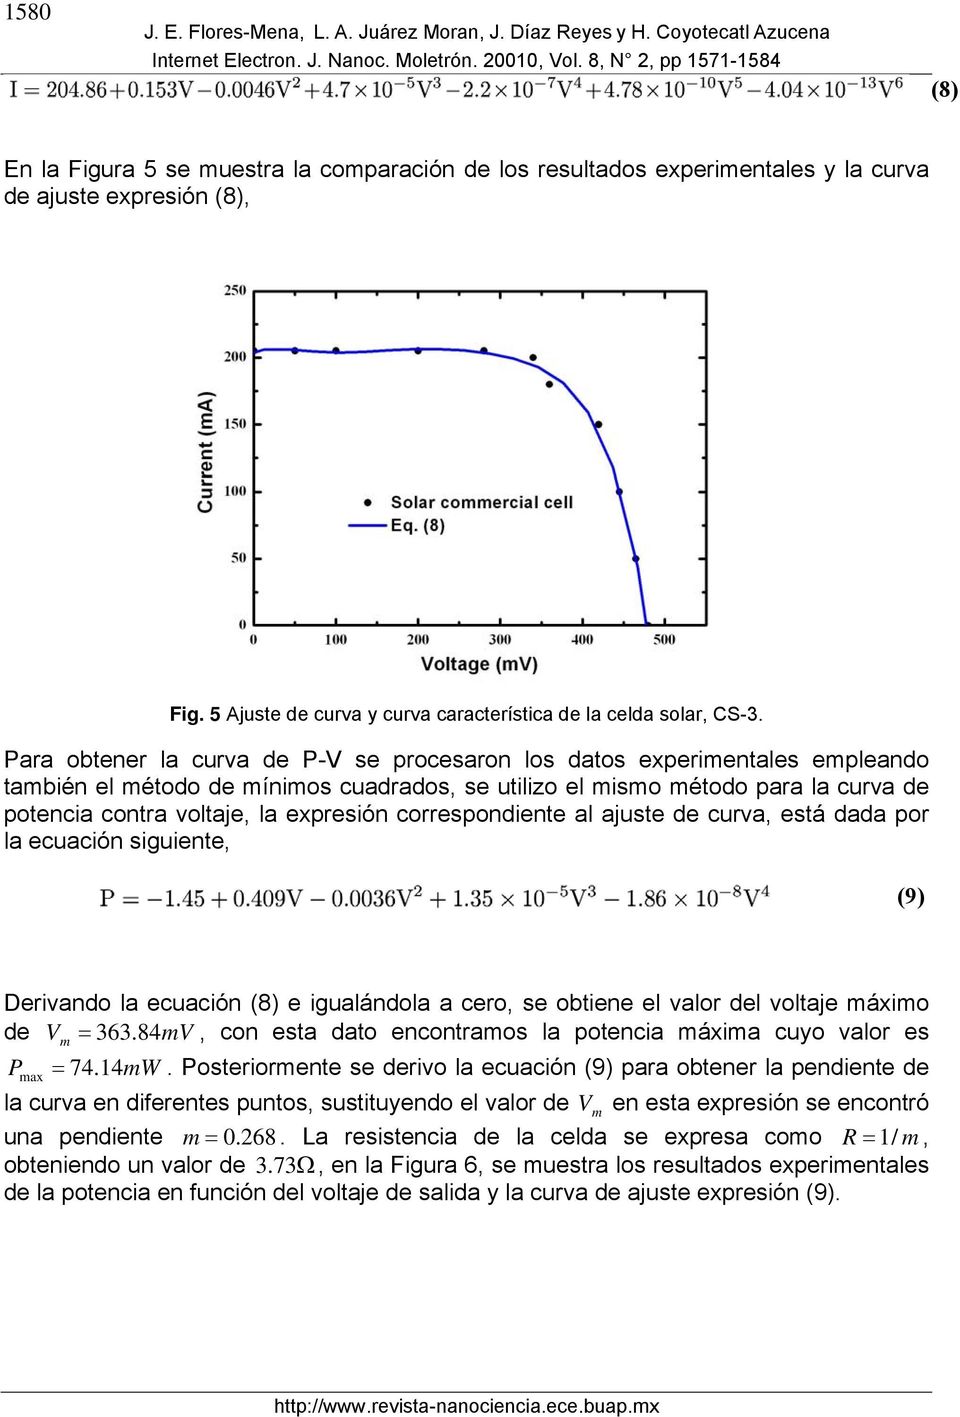 Para obtener la curva de P-V se procesaron los datos experimentales empleando también el método de mínimos cuadrados, se utilizo el mismo método para la curva de potencia contra voltaje, la expresión